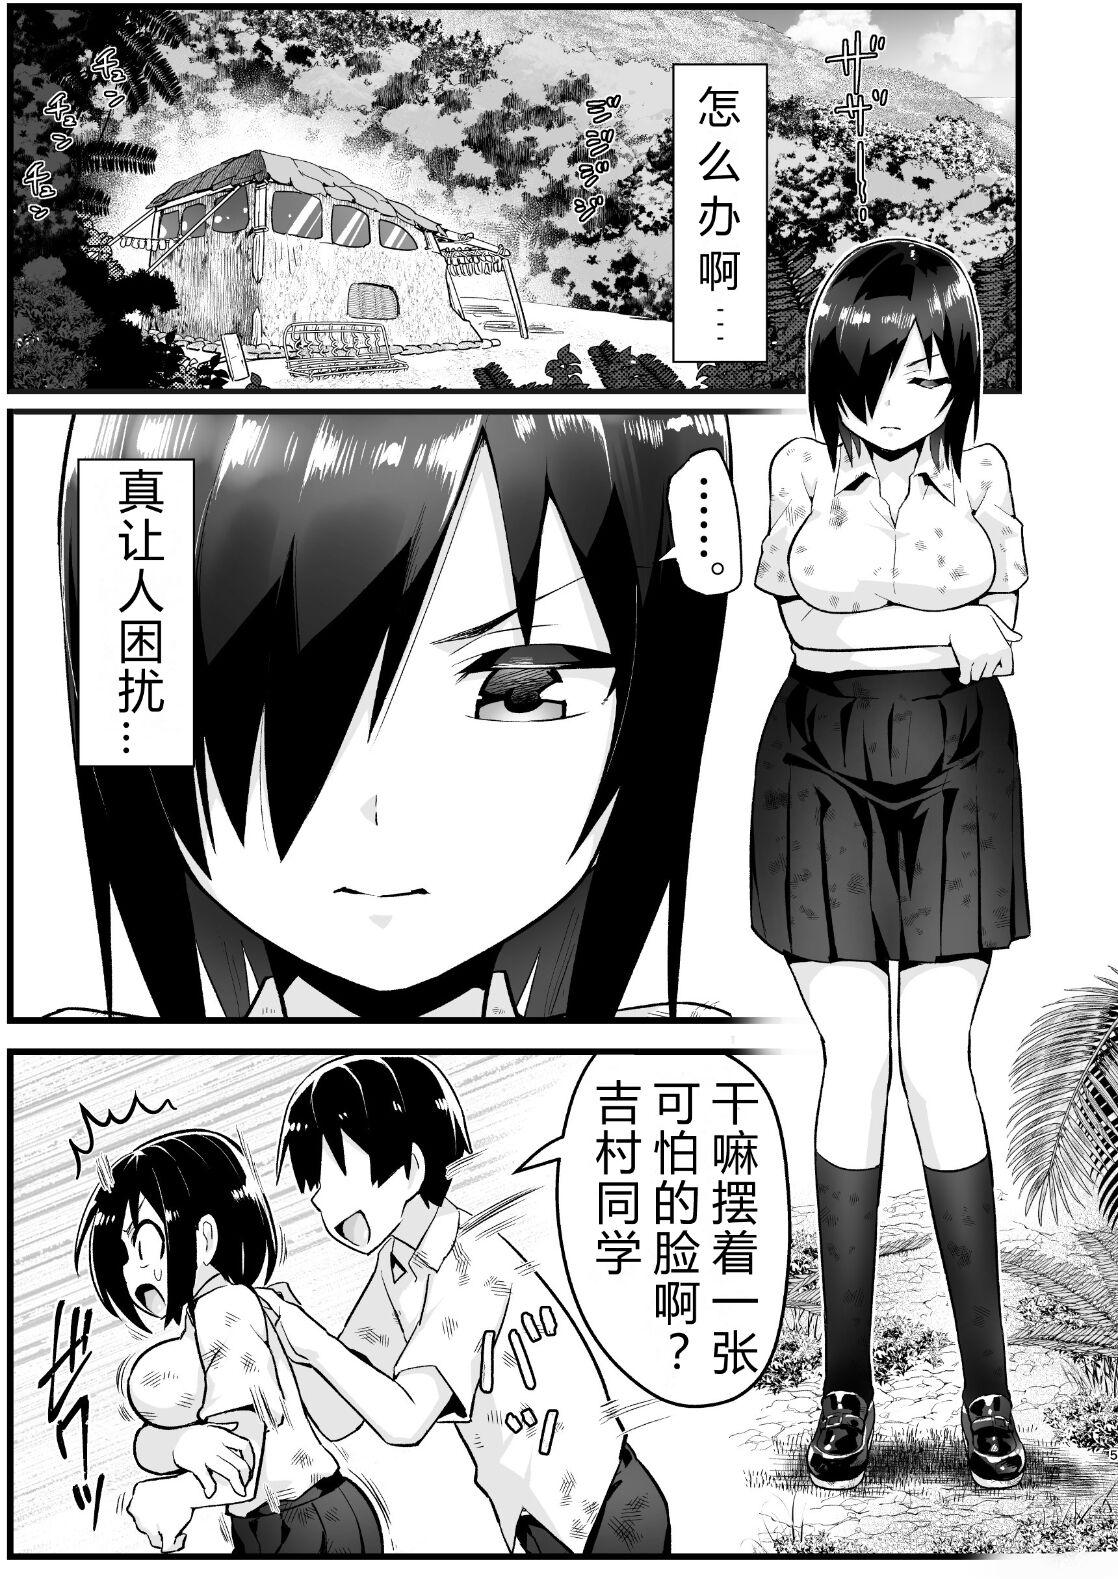 Hoe [OTOREKO (Toilet Komoru)] Mujintou Onna-san Zenshin Dorodarake de Pakorareru!: Yoshimura-san 6-wa [vexling个人机翻] - Original Anal Creampie - Page 4